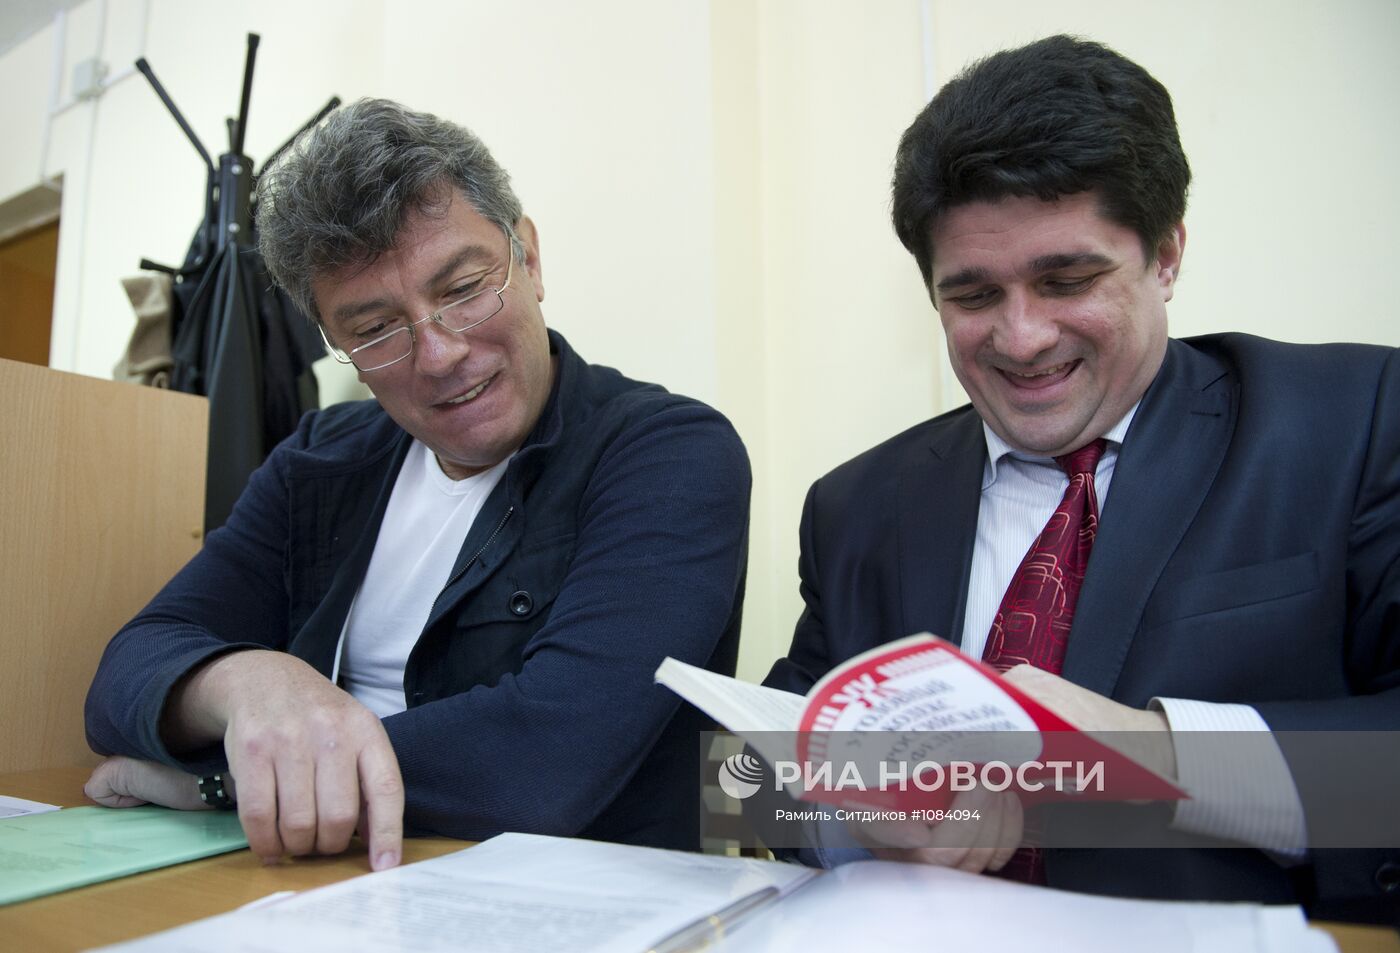 Суд перенес рассмотрение дела в отношении политика Б.Немцова